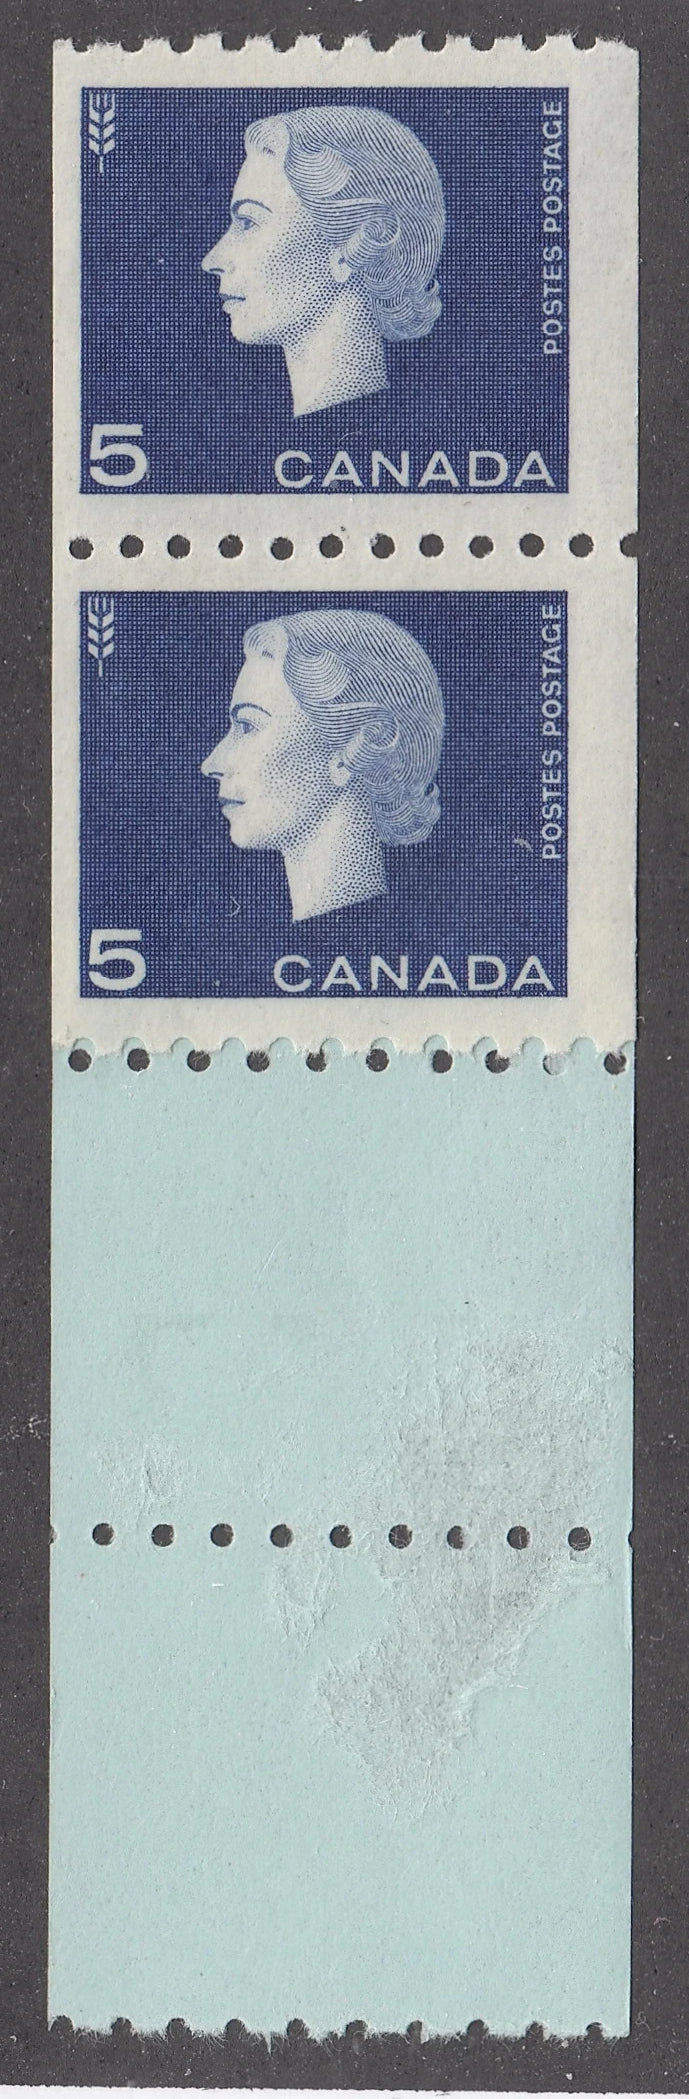 0409CA2105 - Canada #409 - Mint Coil Start Strip